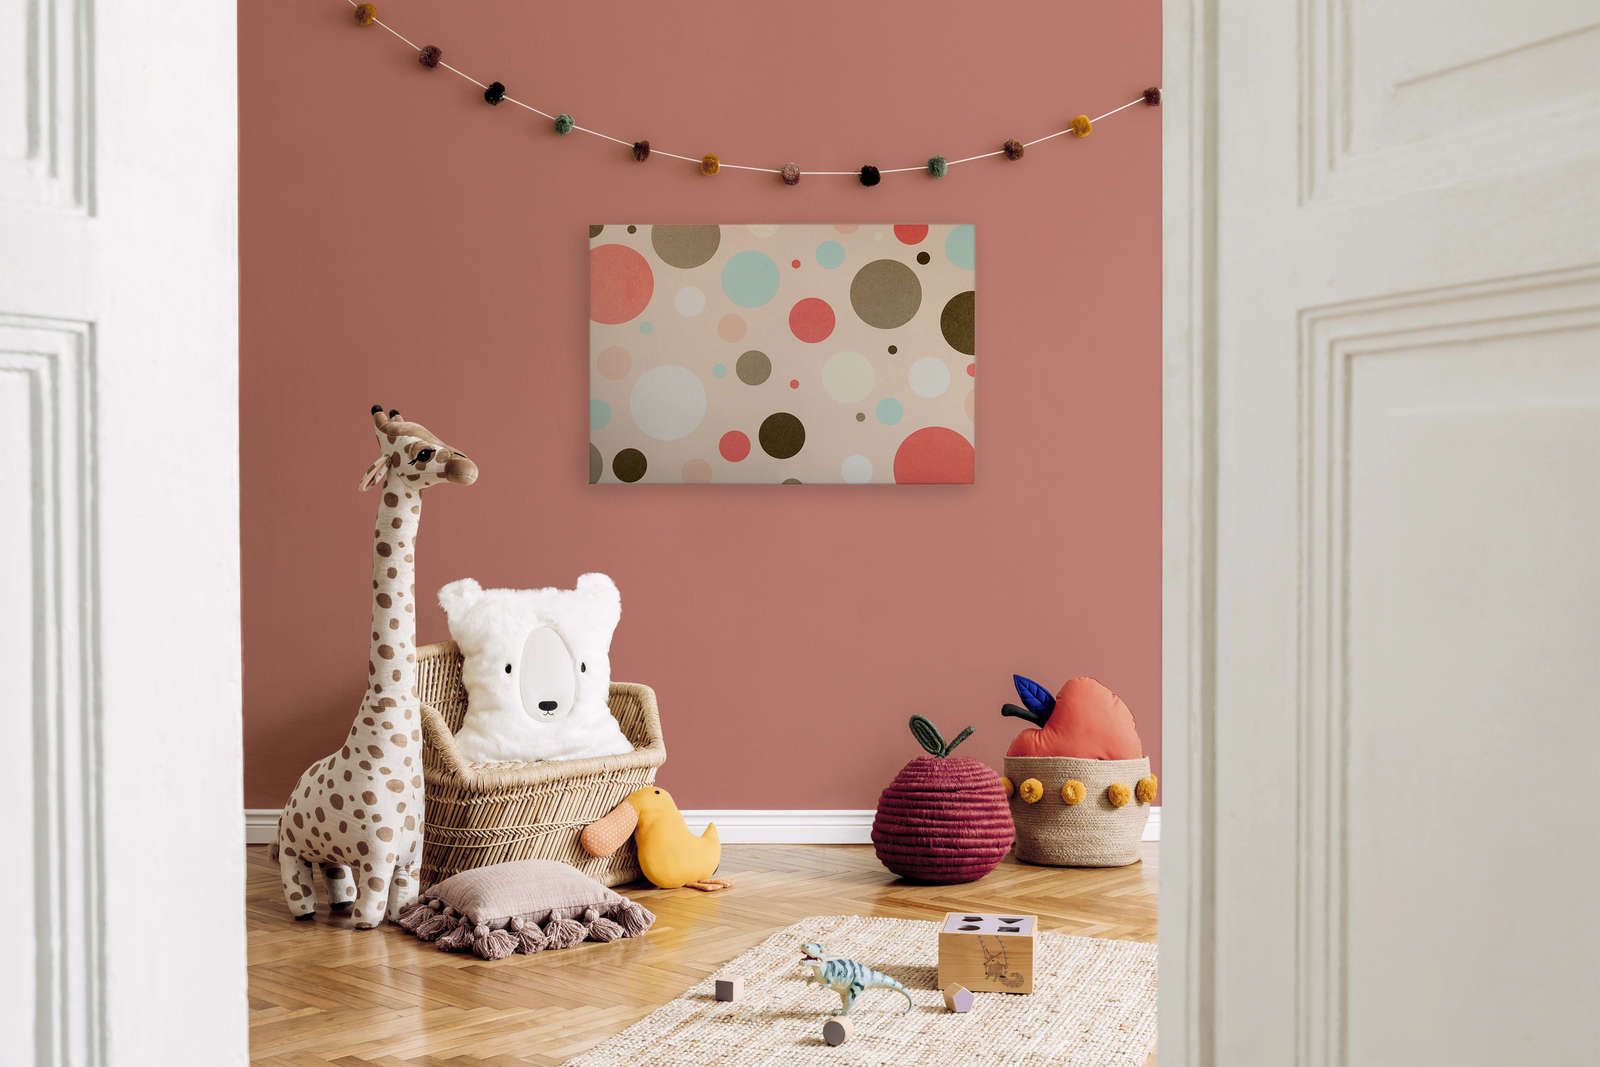             Tela per la camera dei bambini con cerchi colorati - 90 cm x 60 cm
        